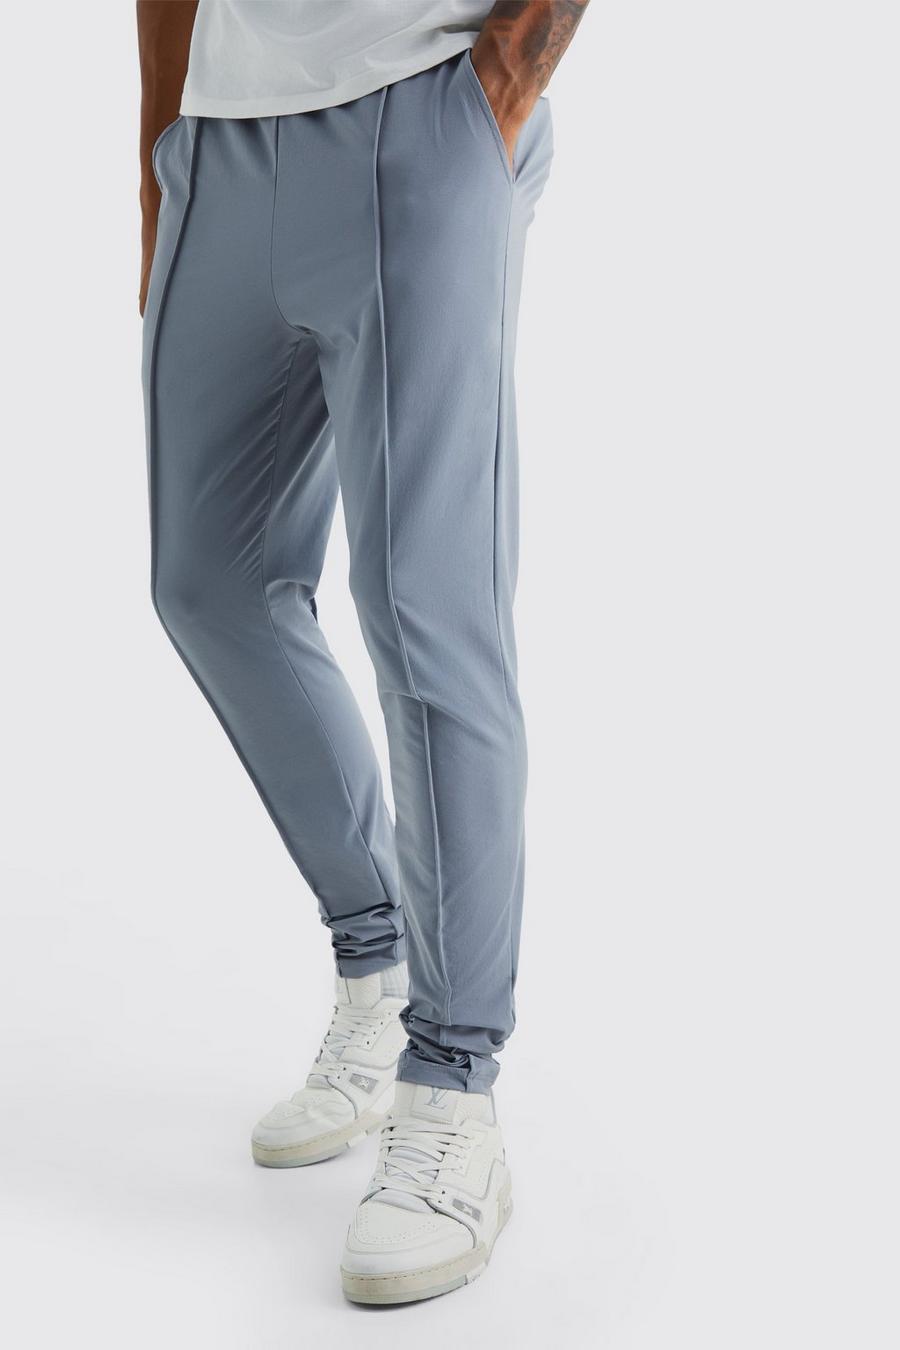 Pantaloni Tall in Stretch leggero elasticizzato con nervature, Light grey grigio